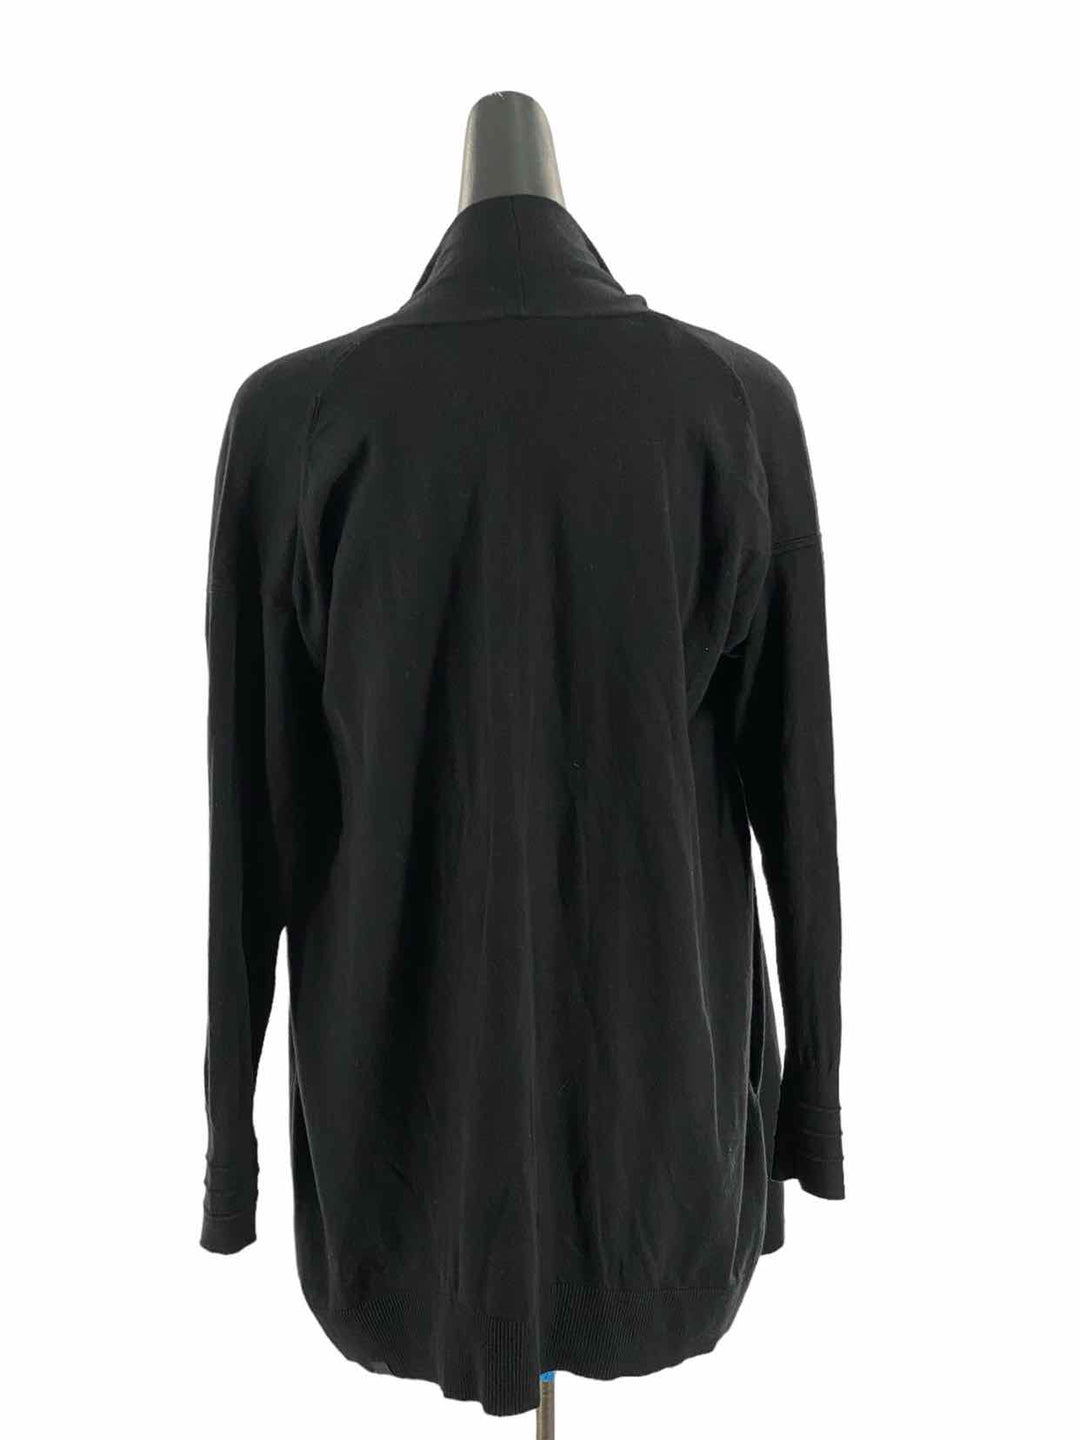 Lululemon Size 6 Black Sweater